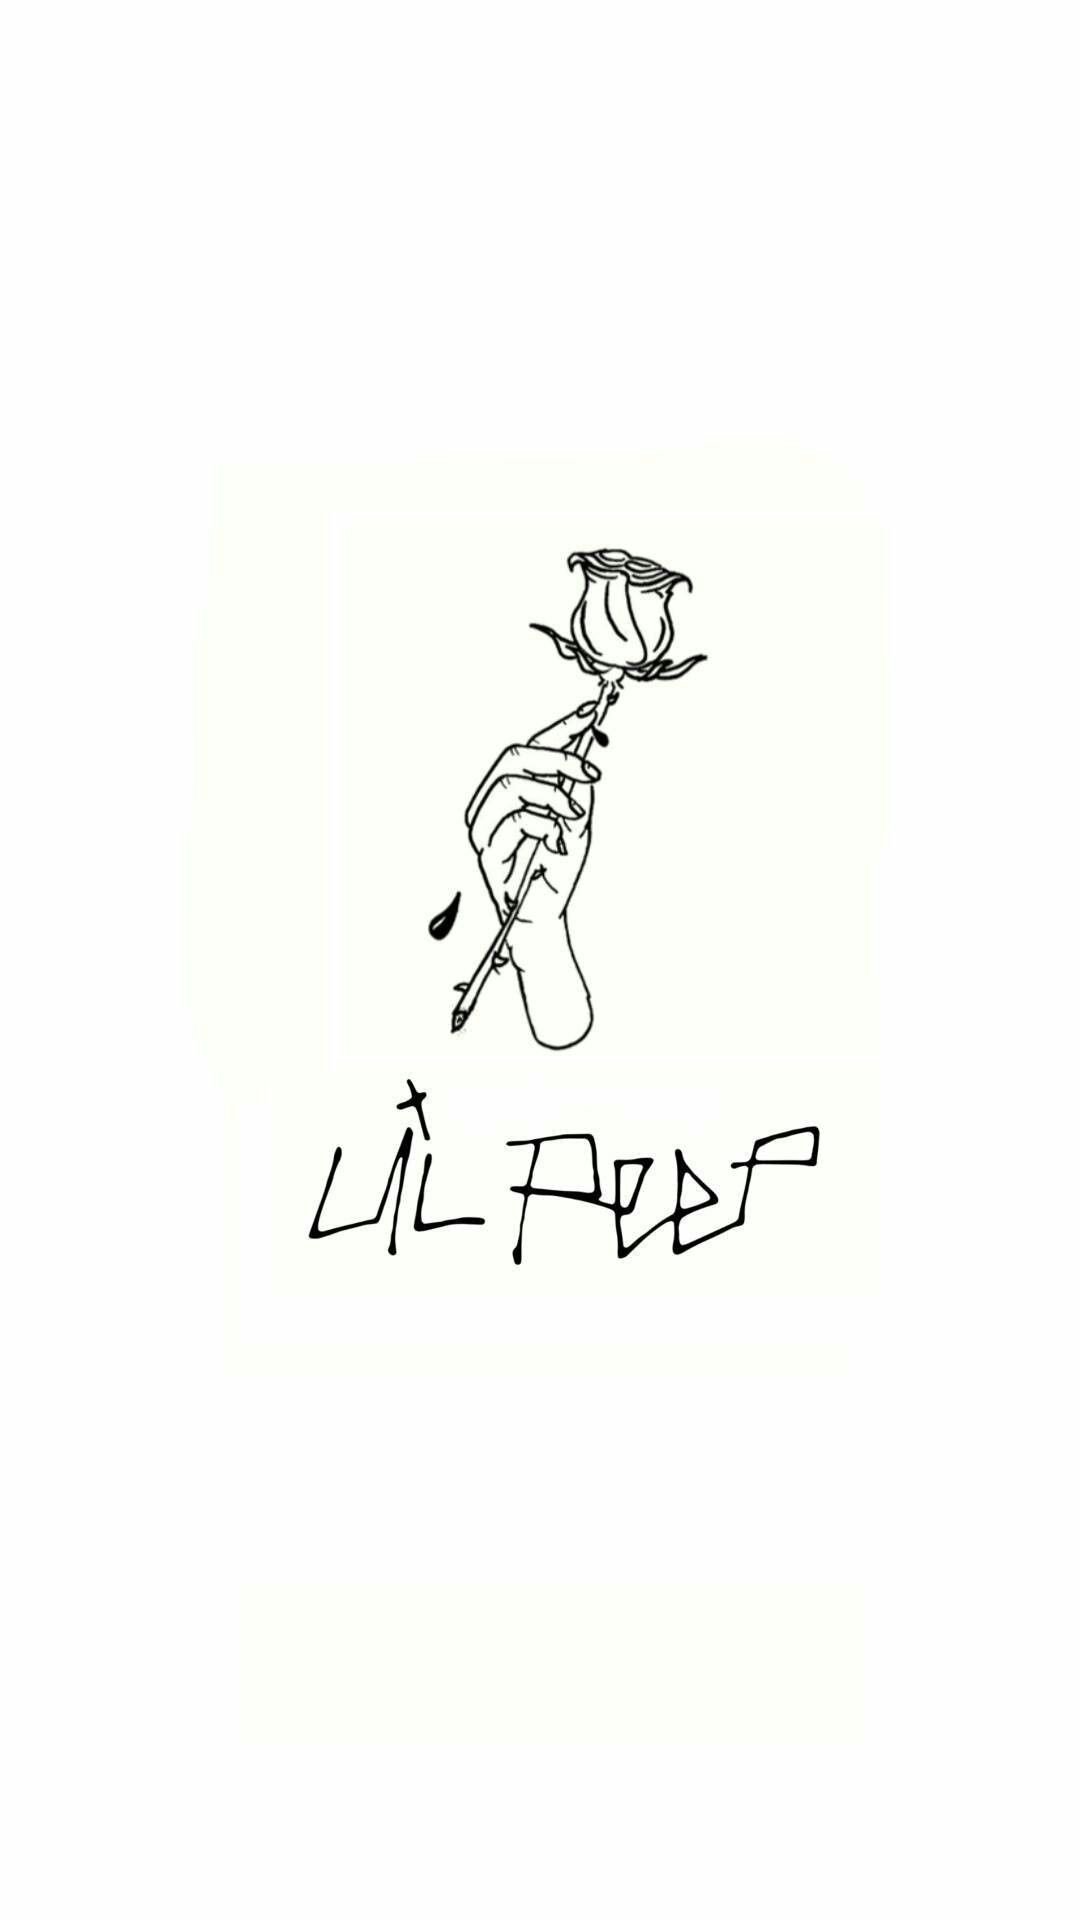 Lil peep tattoos by Arkhamnatic Arts on Lil Peep. Lil peep